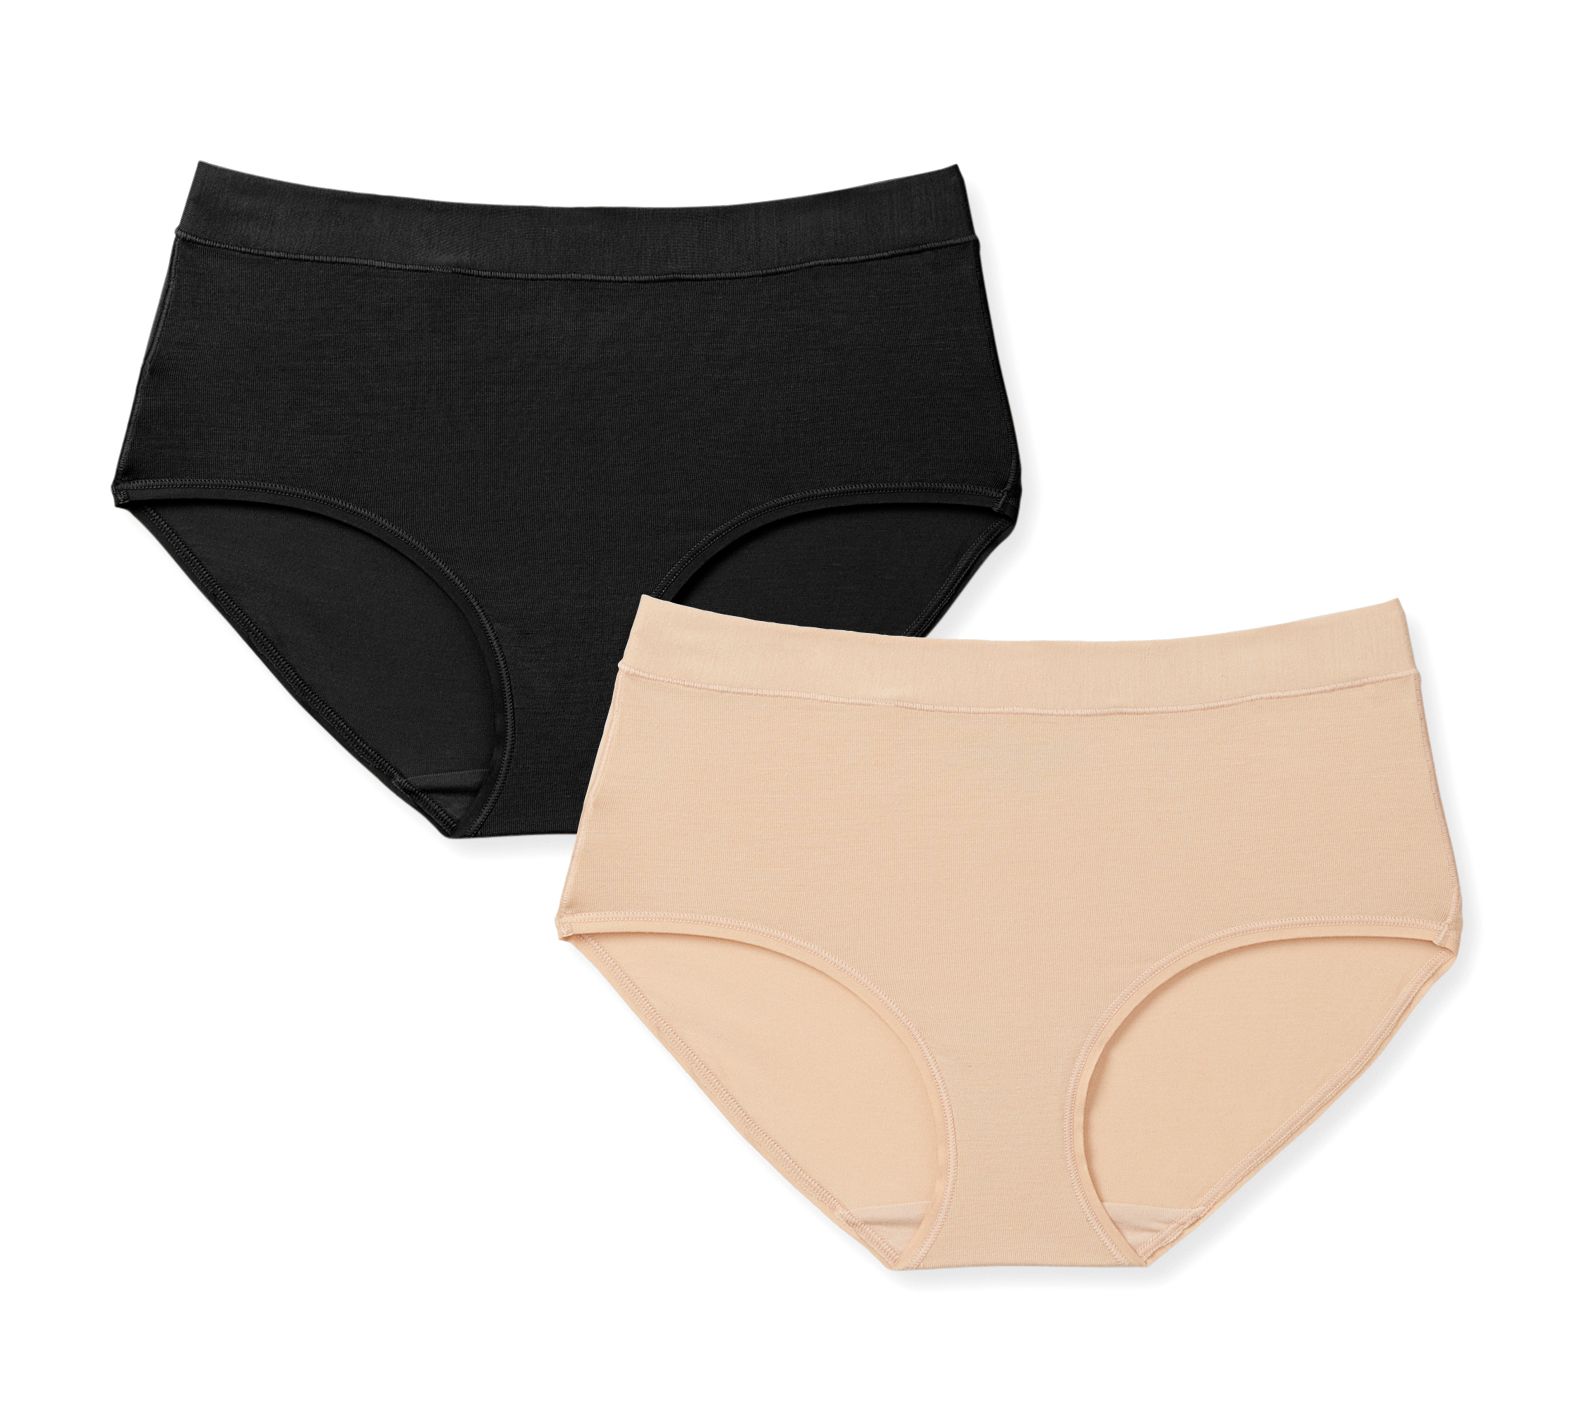 Women's Date Night Underwear Study – Tommy John